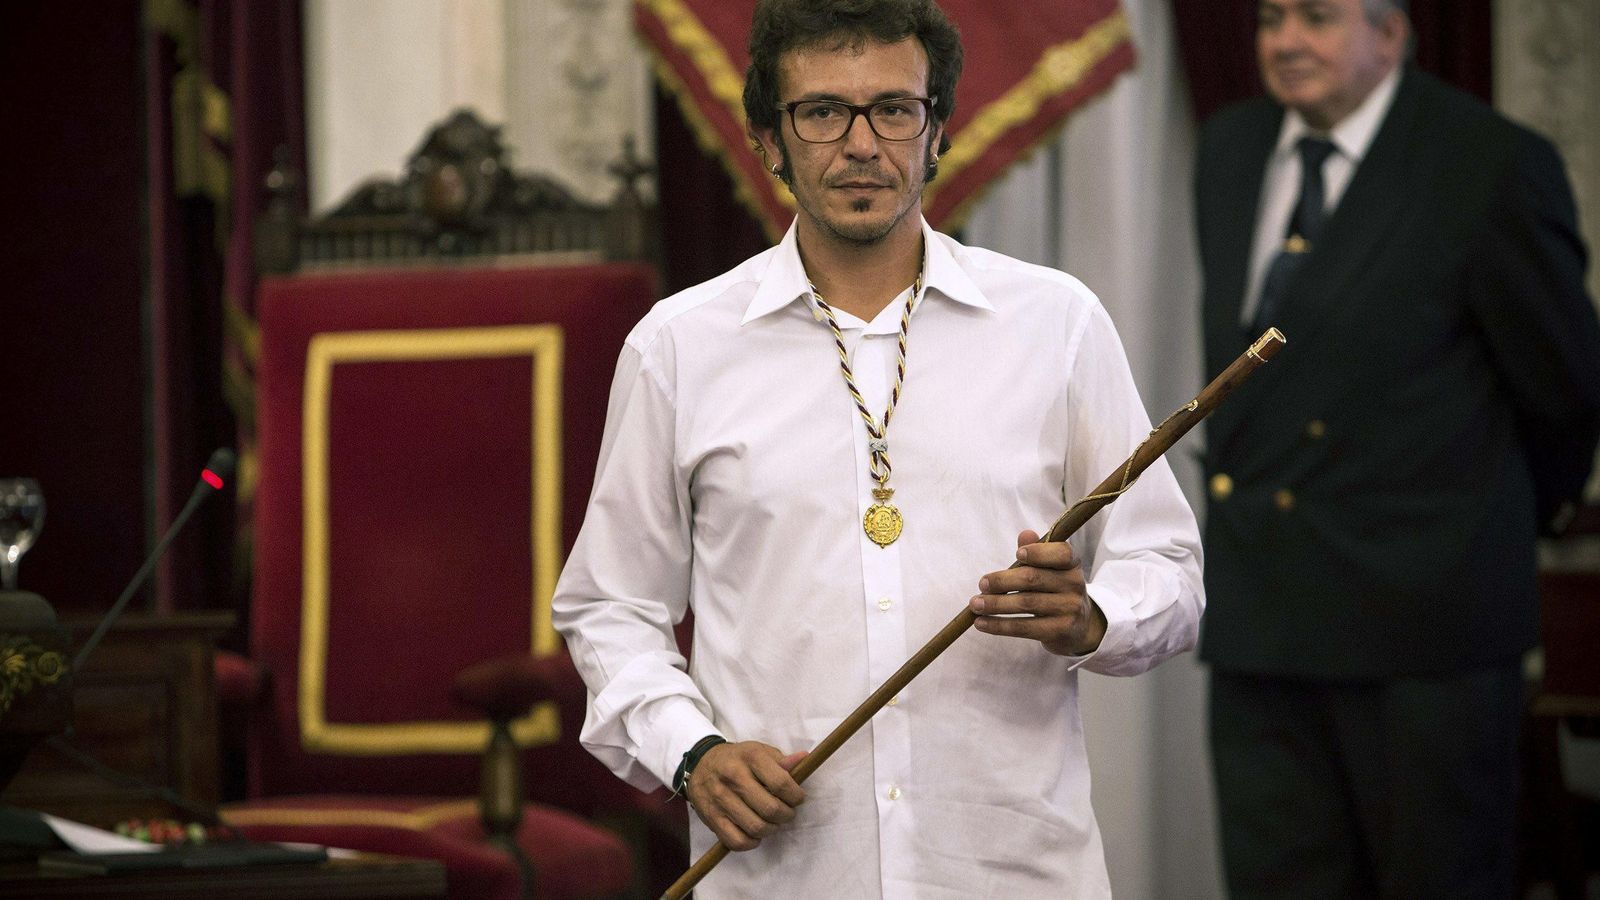 Foto: El nuevo alcalde de Cádiz, José María González Santos "Kichi", tras tomar posesión de su cargo. (Efe)